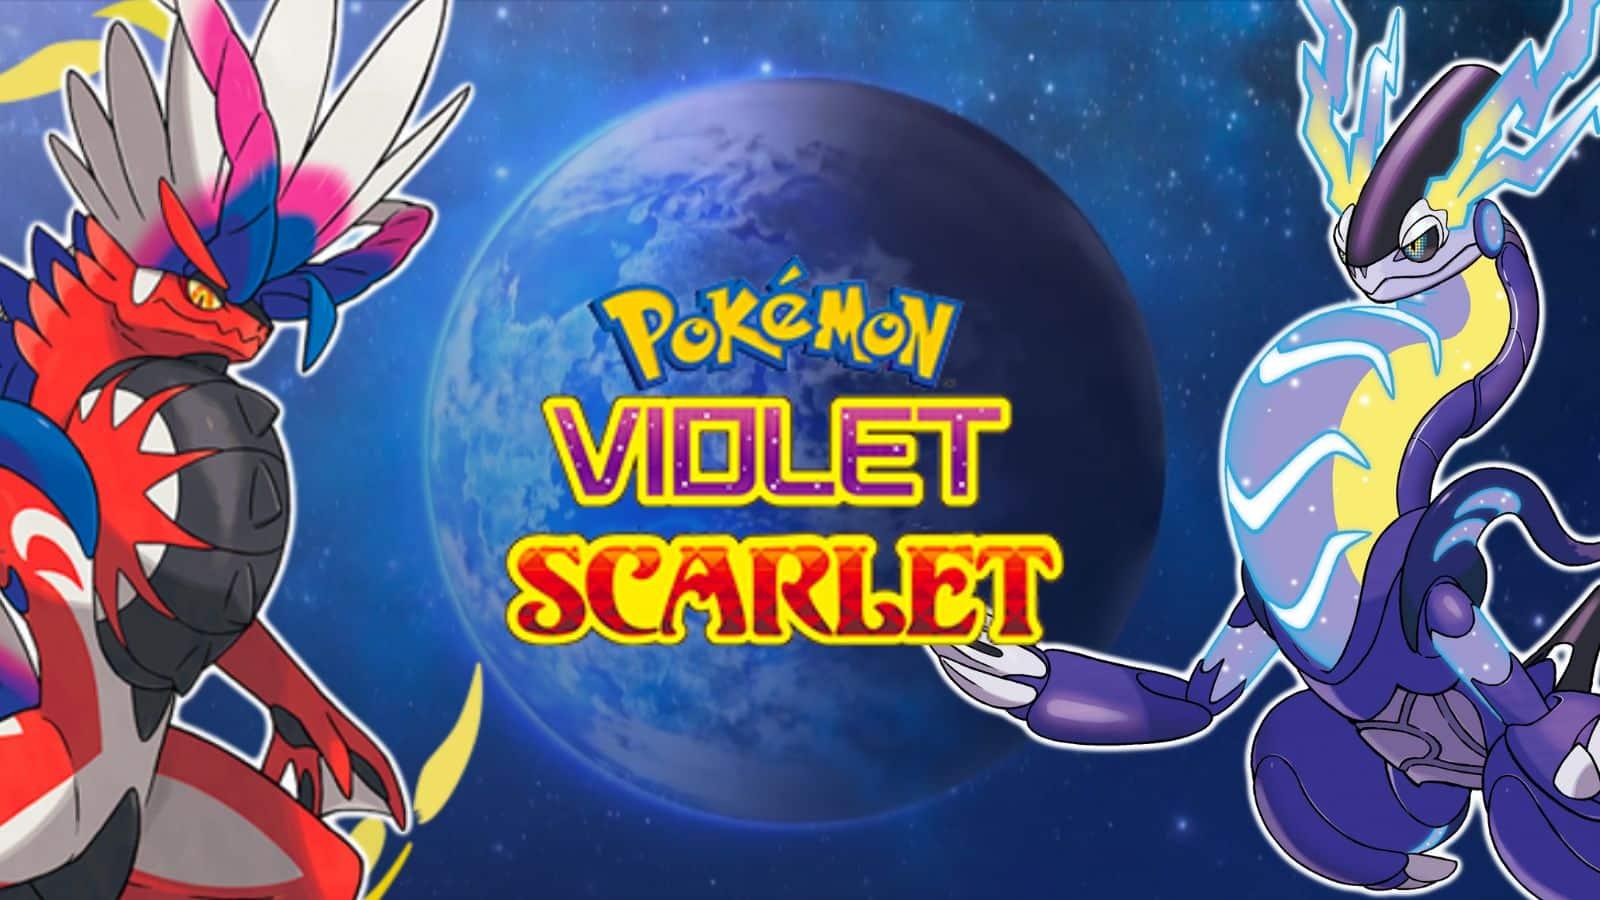 Pokémon Scarlet and Pokémon Violet launch November 18th 